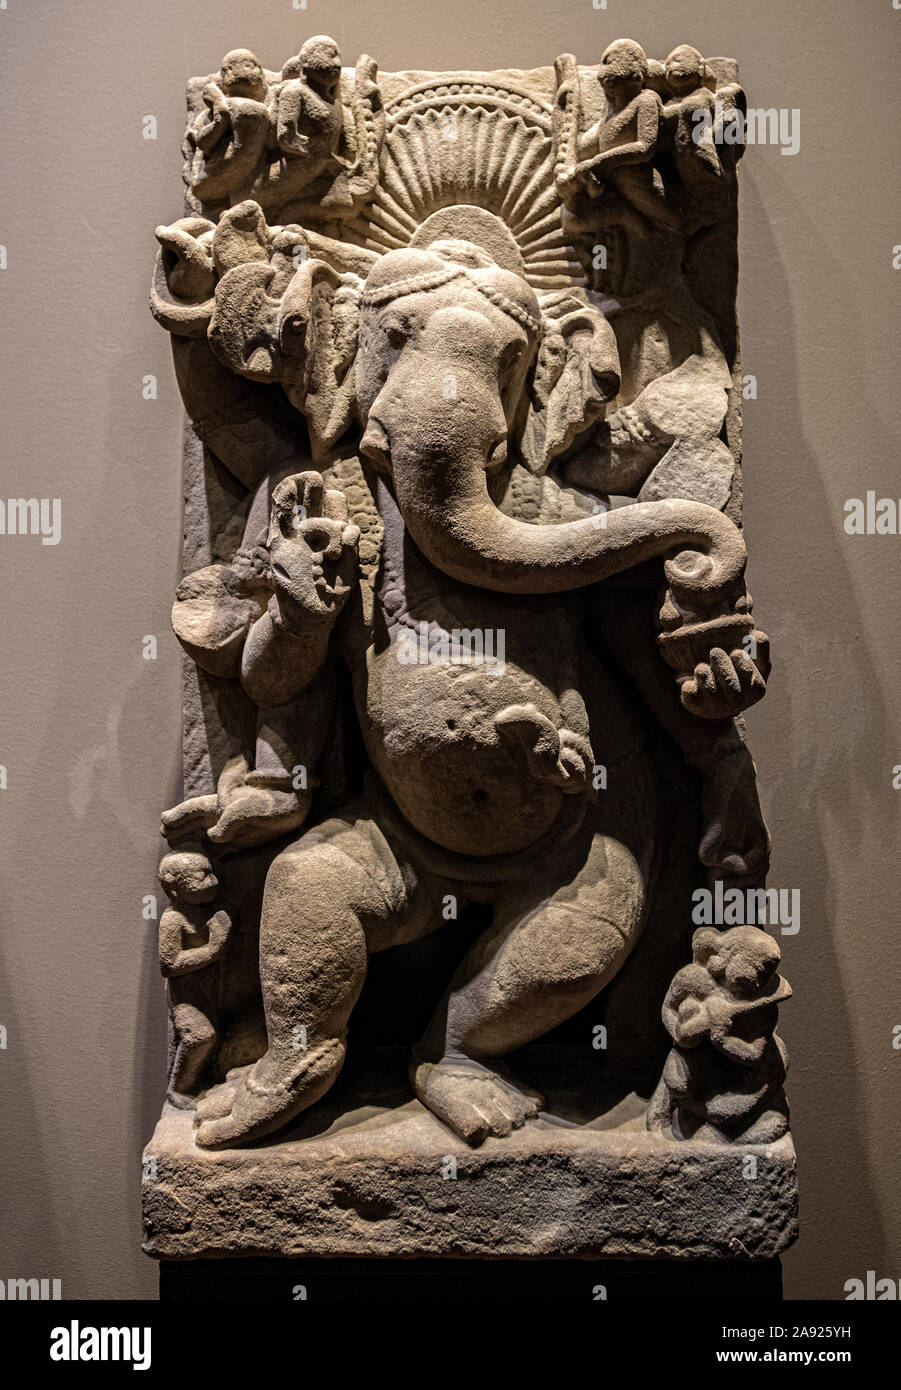 Italie Piémont Turin - Mazzonis Palace - Mao ( Musée Museo d'Arte Orientale ) - Musée d'art oriental - Danse Ganesha - dieu indien de la sagesse, la suppression d'obstacles - Madhya Pradesh 10e centuruy A.D. Banque D'Images